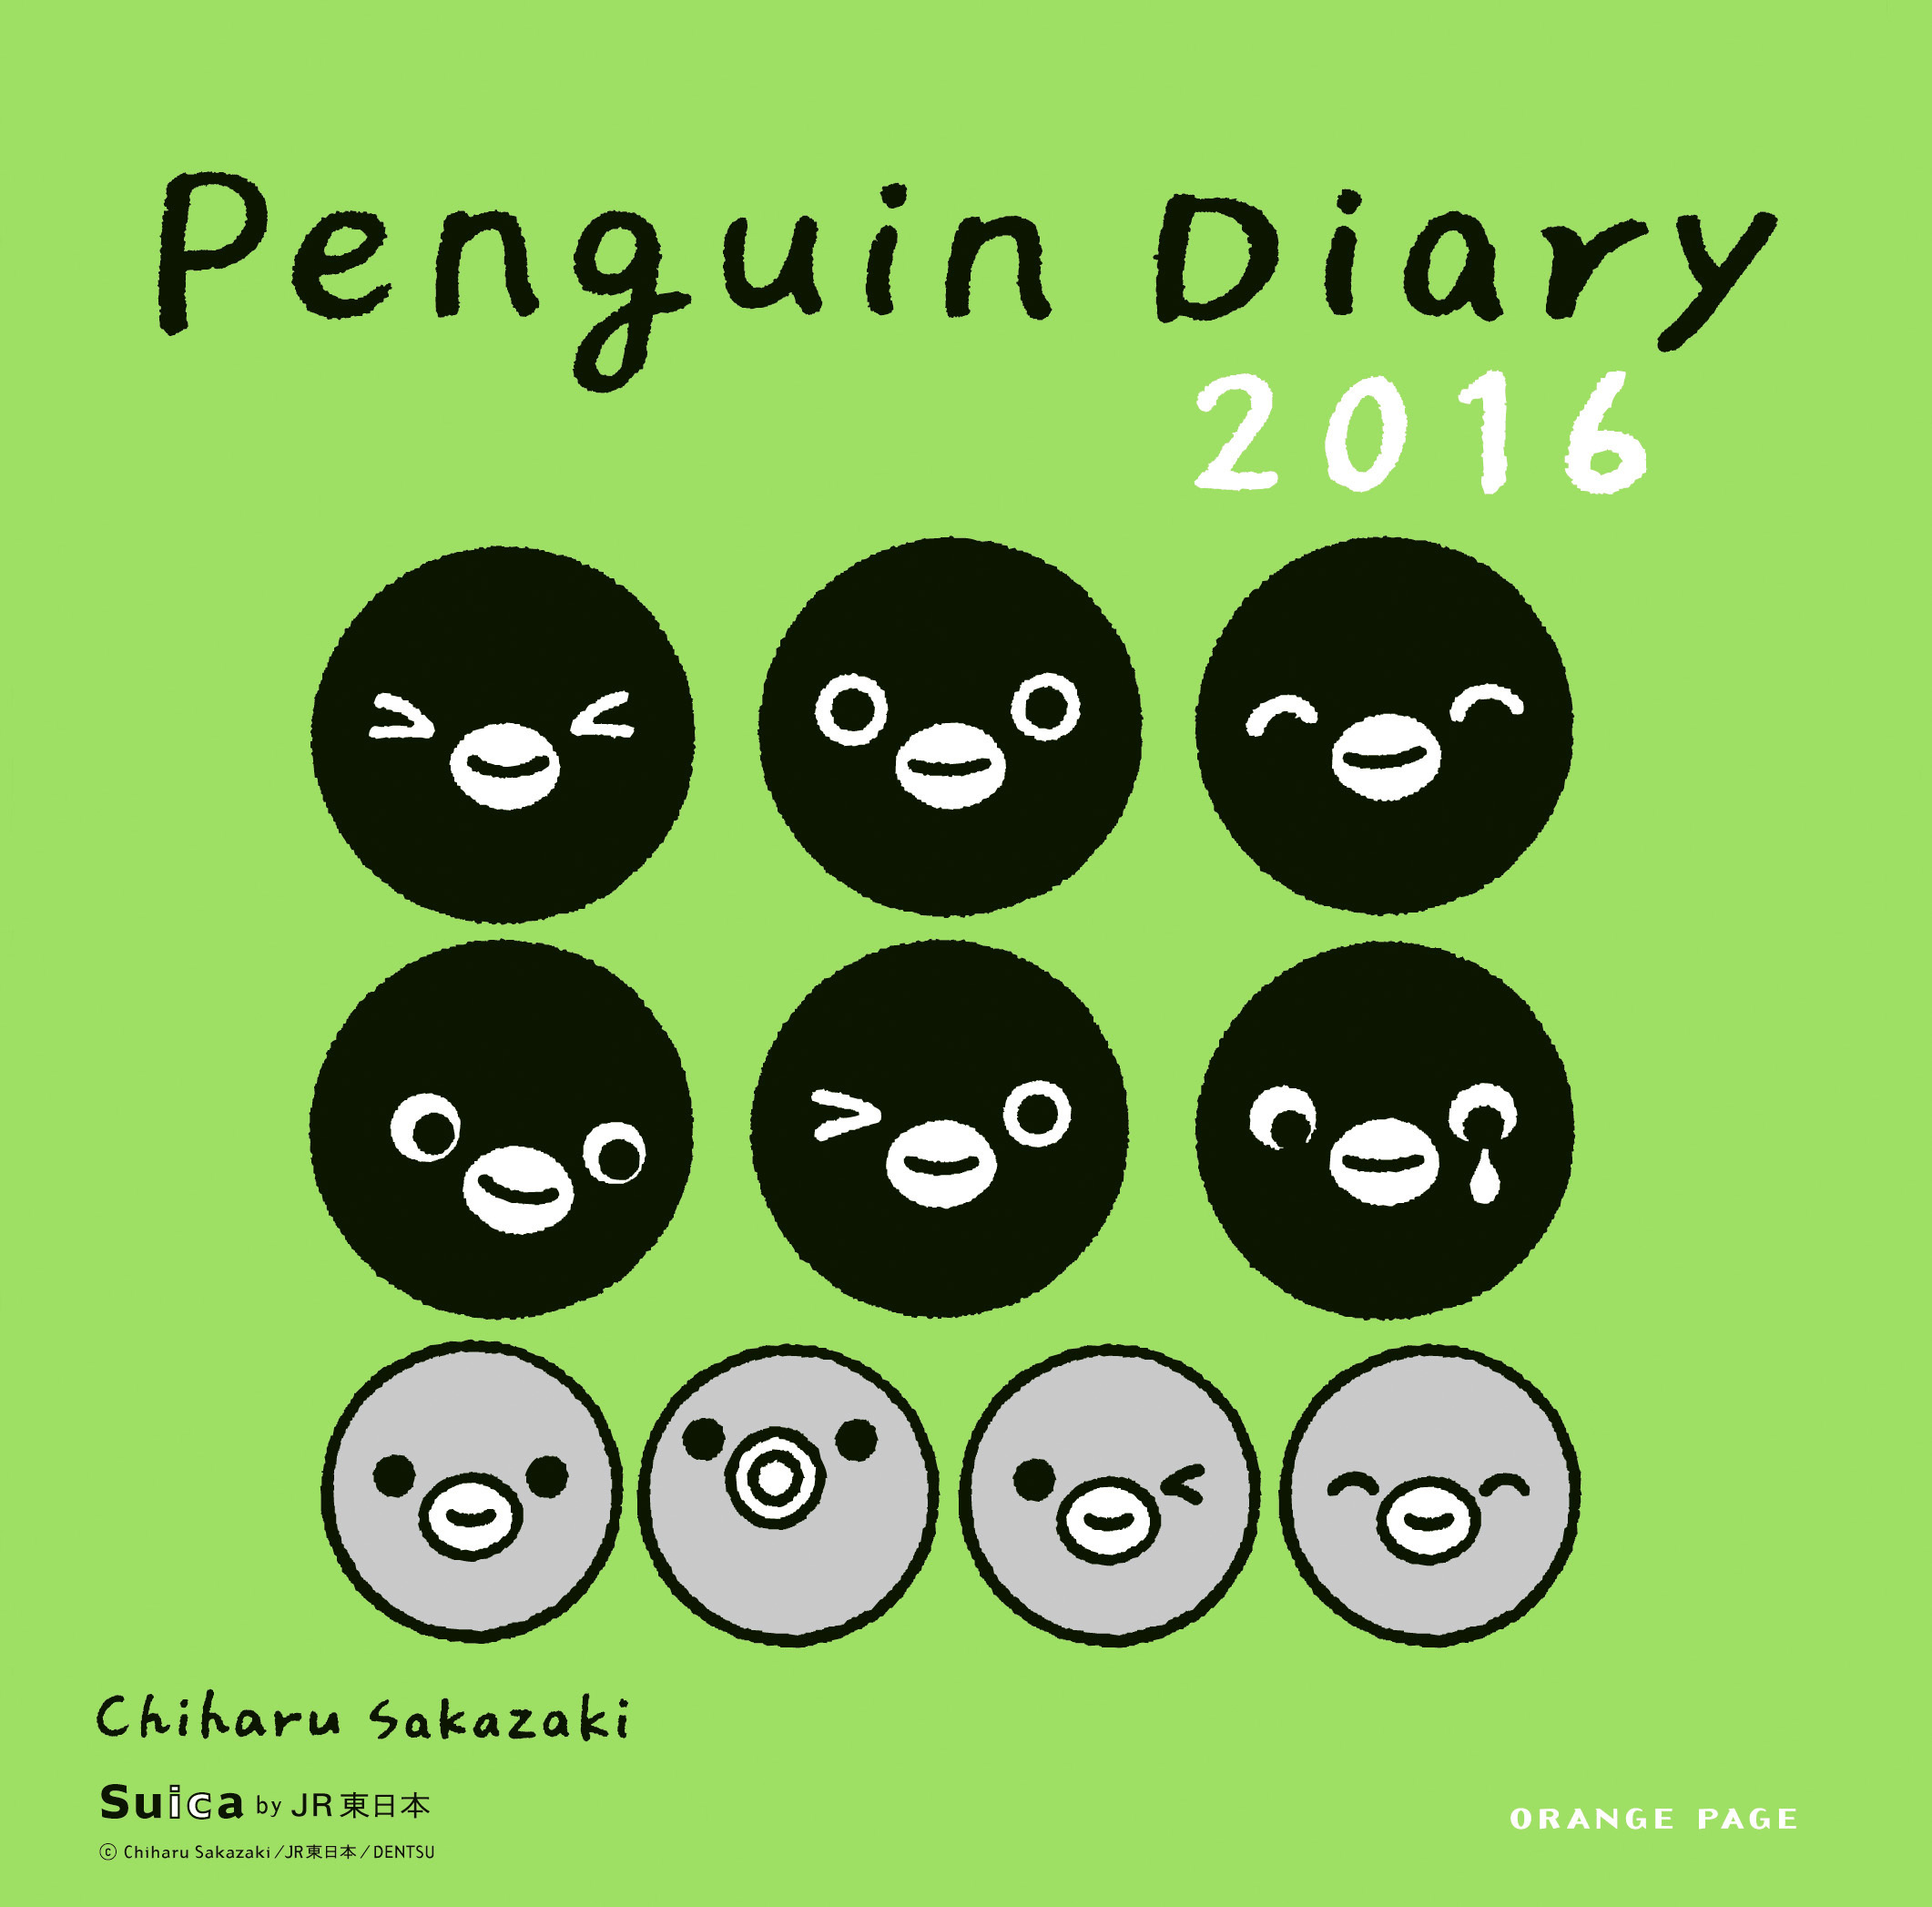 Jr東日本のicカードでおなじみ Suicaのペンギン のかわいい表情が満載 ペンギンダイアリー2016 株式会社オレンジページのプレスリリース